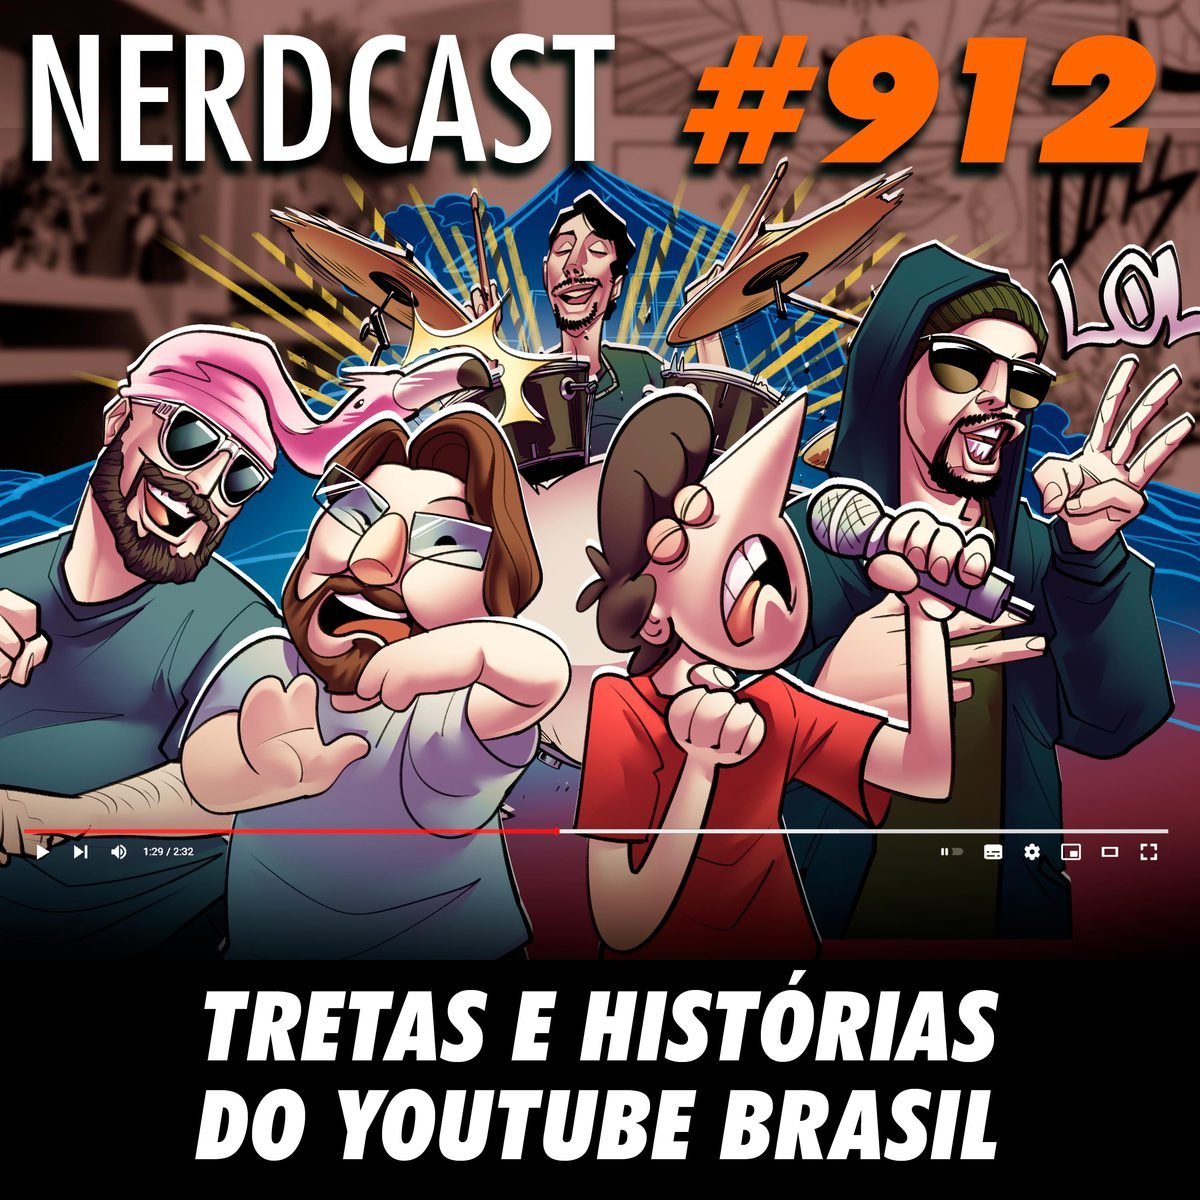 NerdCast 912 - Tretas e histórias do Youtube Brasil